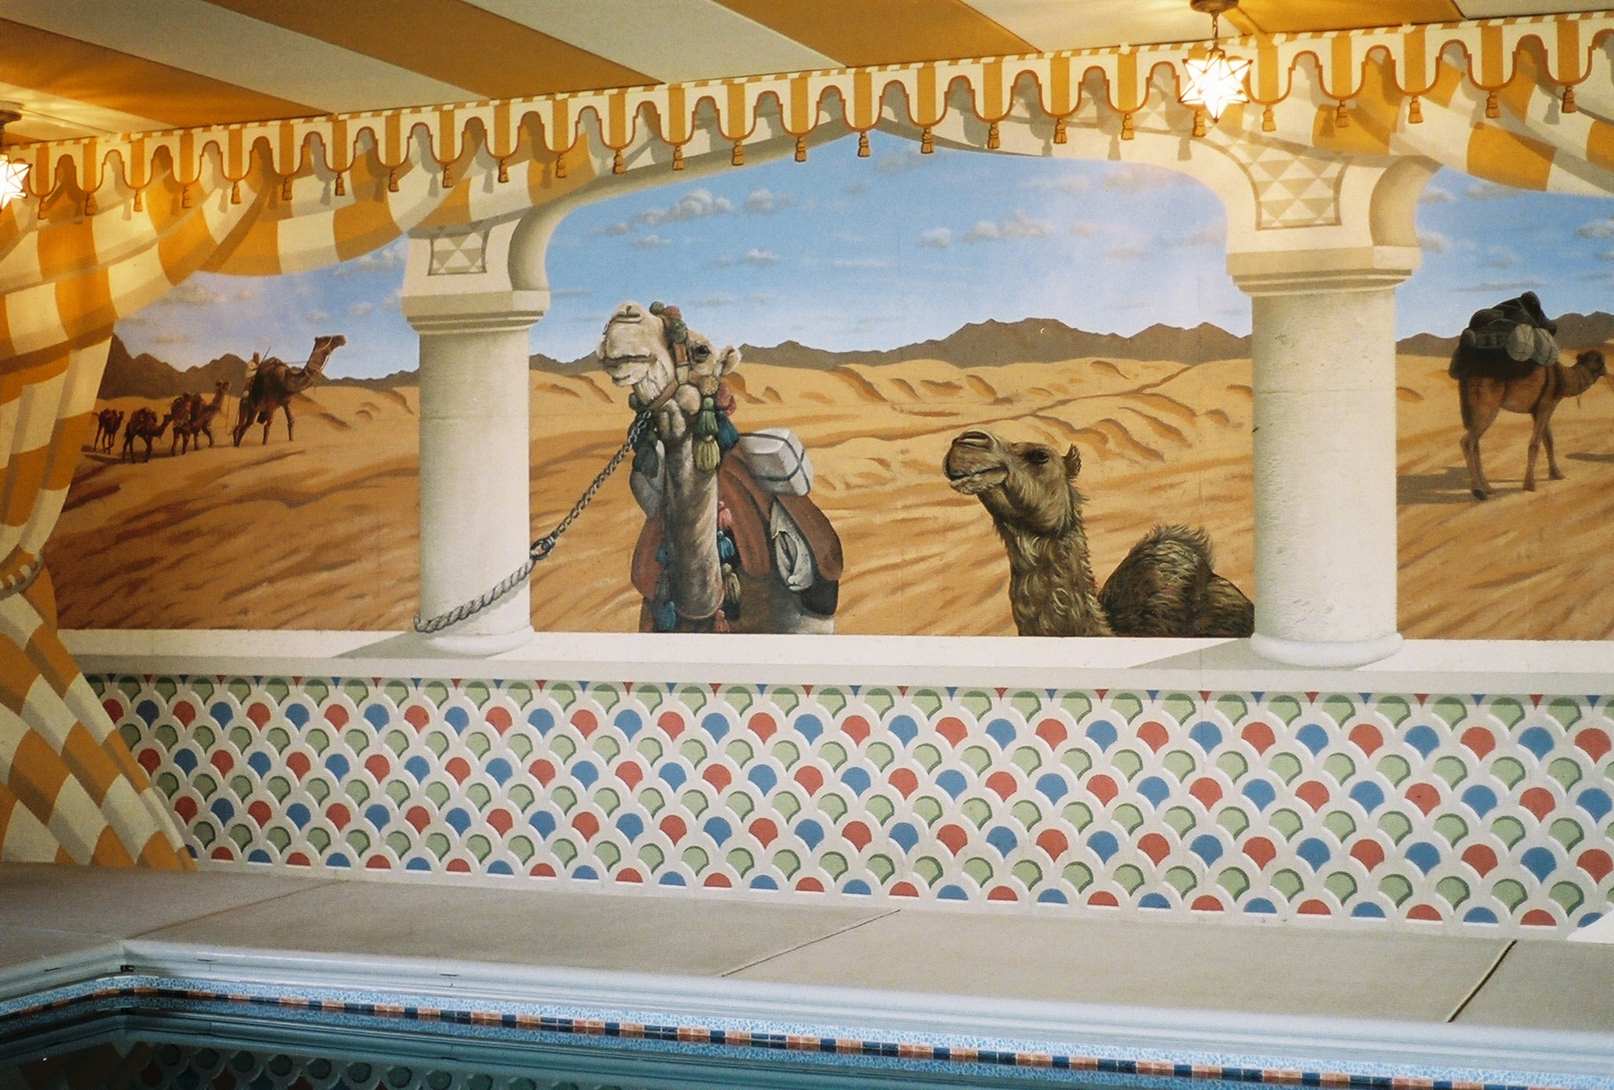 Moroccan Indoor Pool Mural 4